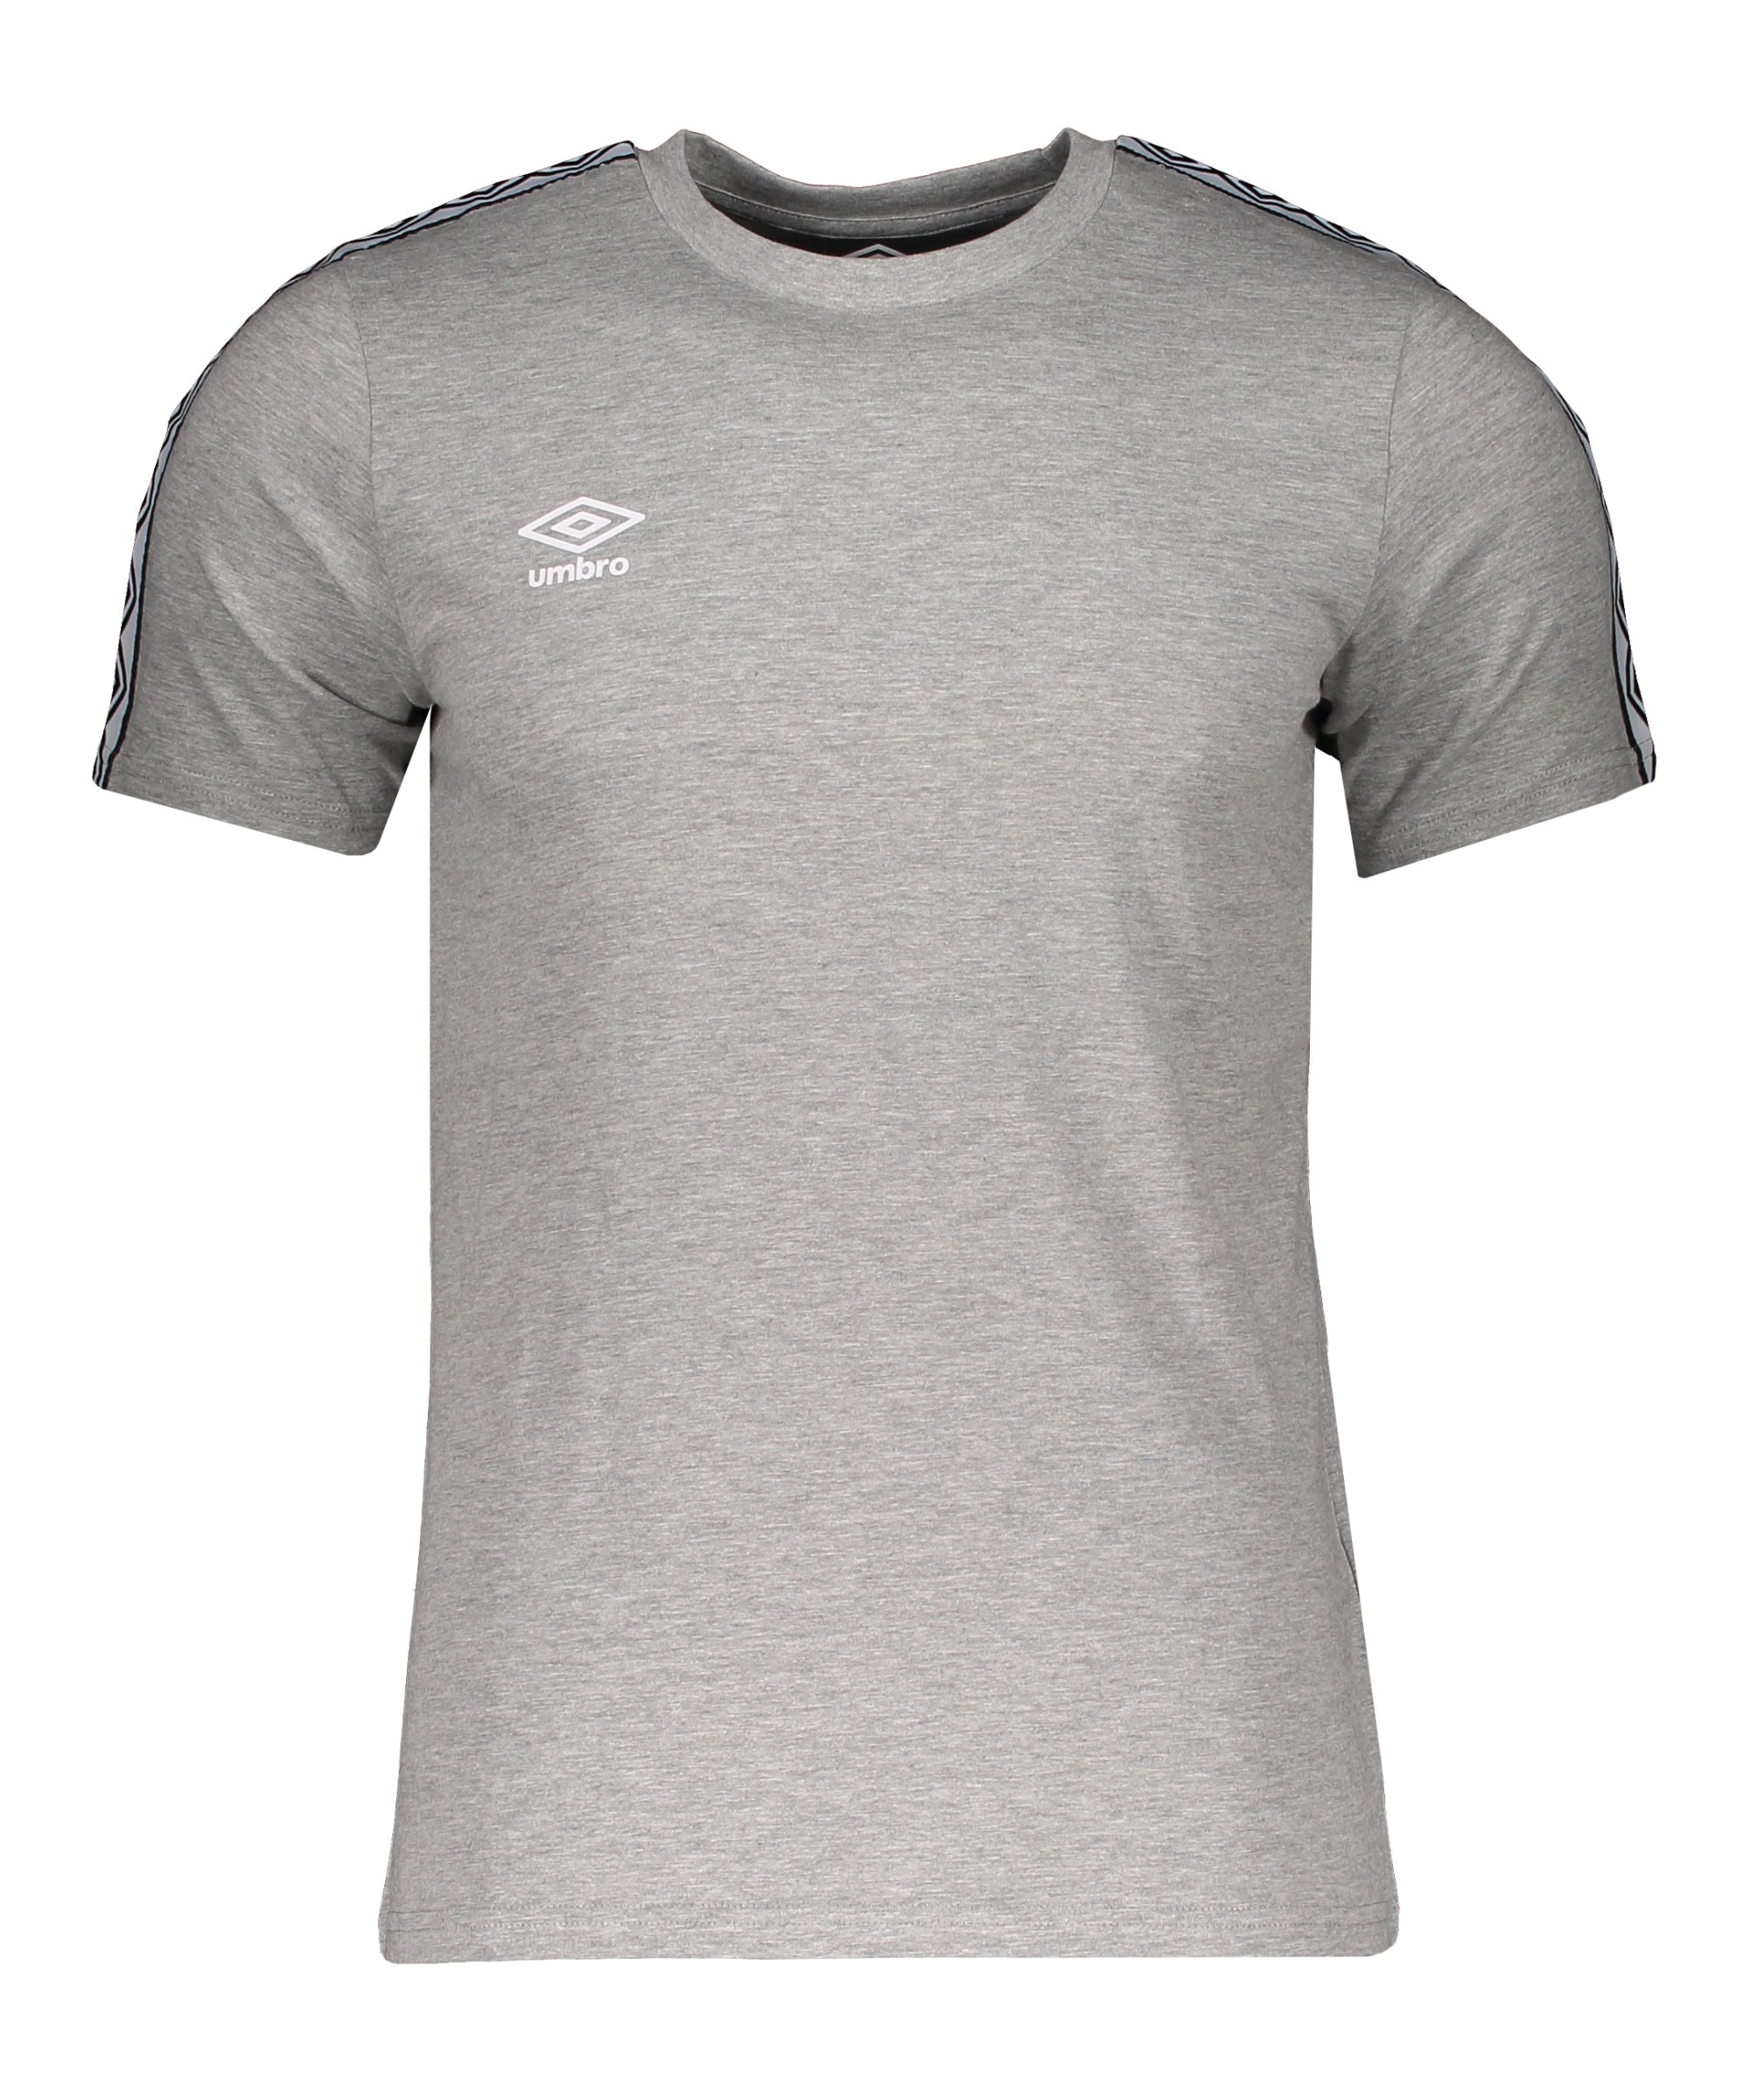 Umbro FW Taped T-Shirt Grau F263 - grau